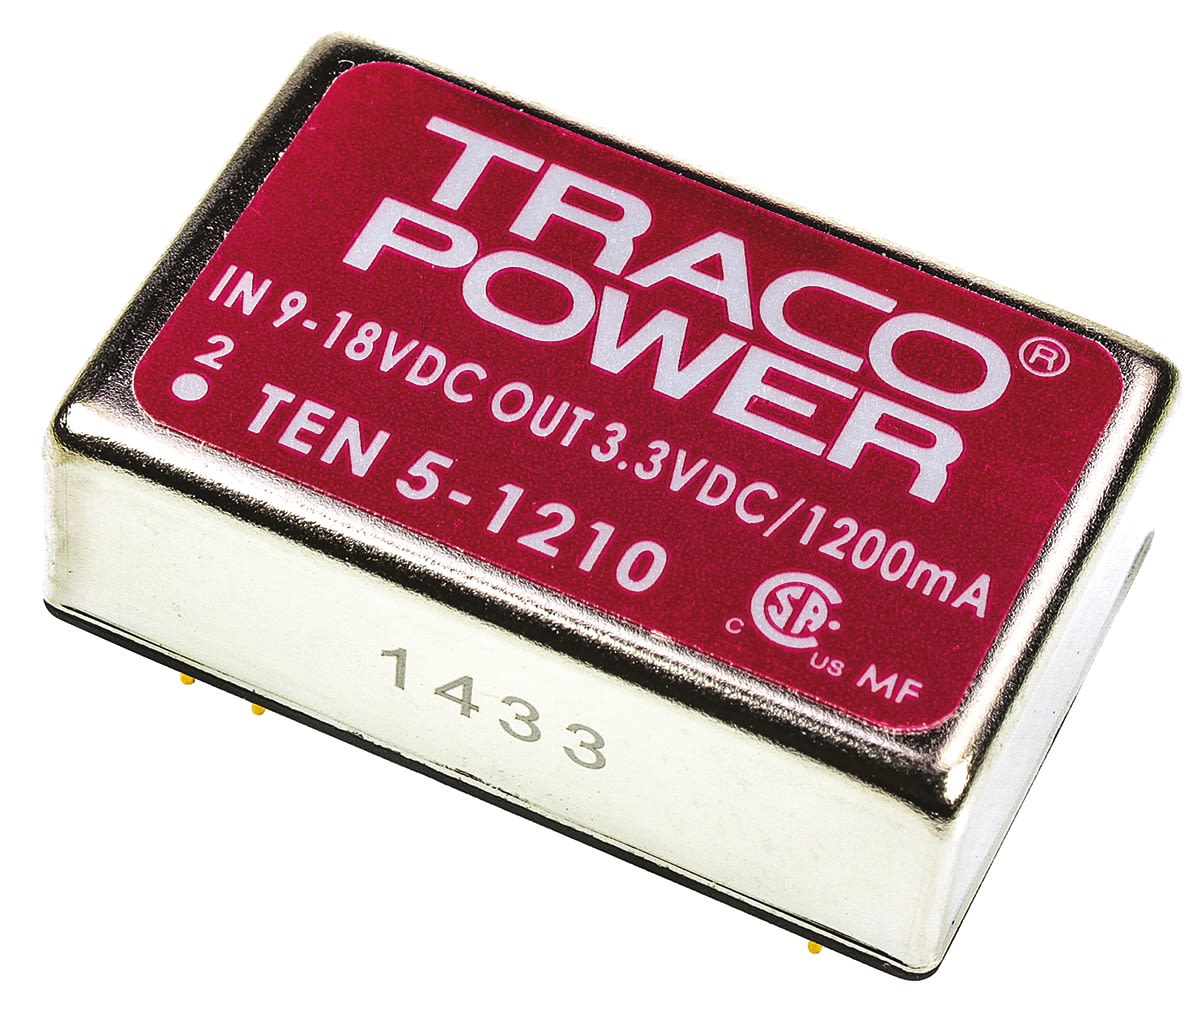 TRACOPOWER TEN 5 DC-DC Converter, 3.3V dc/ 1.2A Output, 9 → 18 V dc Input, 6W, Through Hole